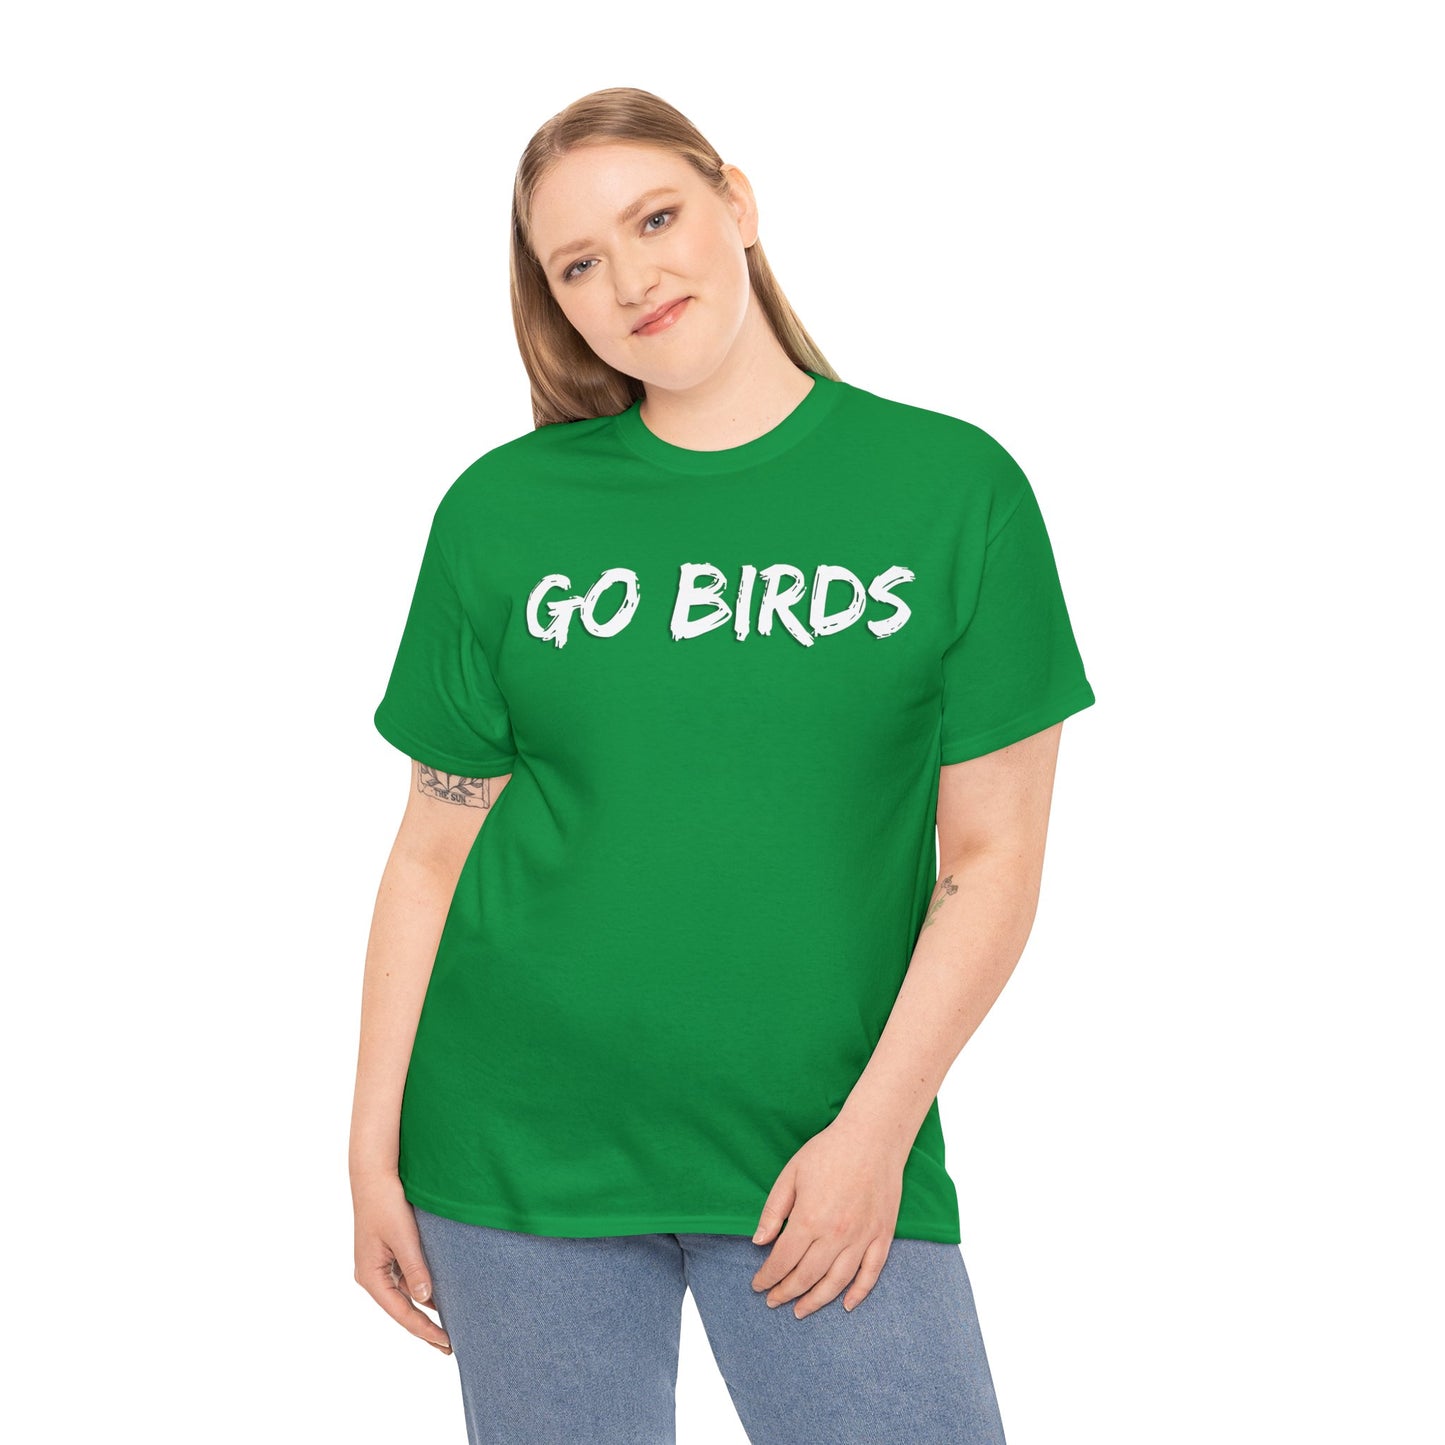 Go Birds! Tee